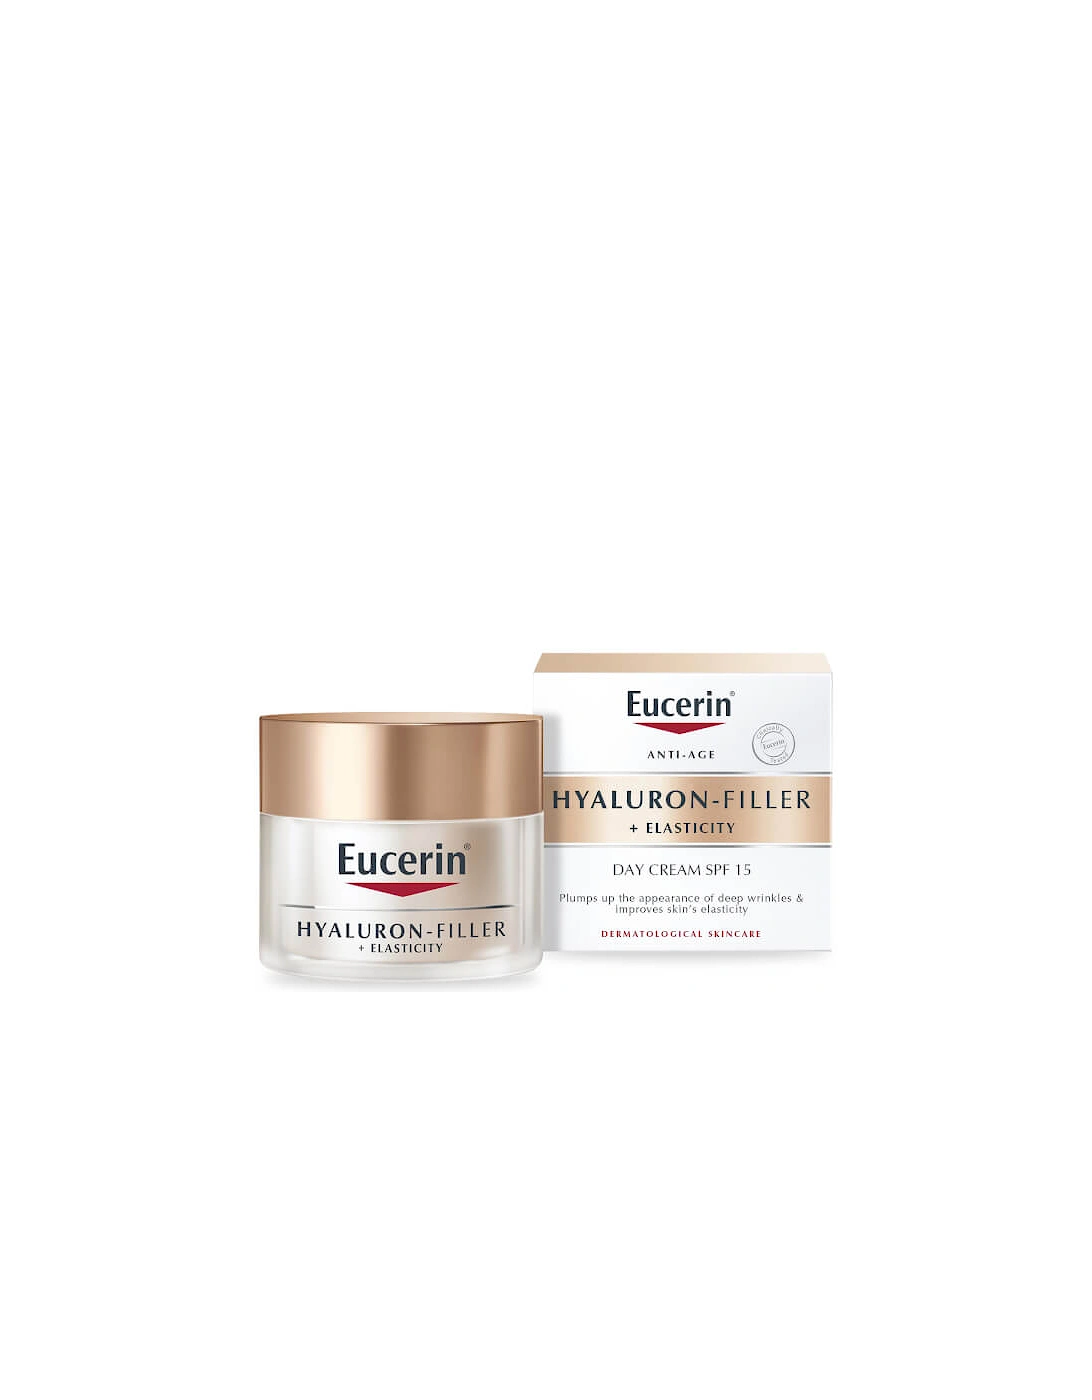 Hyaluron-Filler + Elasticity Day Cream SPF 15 50ml - Eucerin, 2 of 1